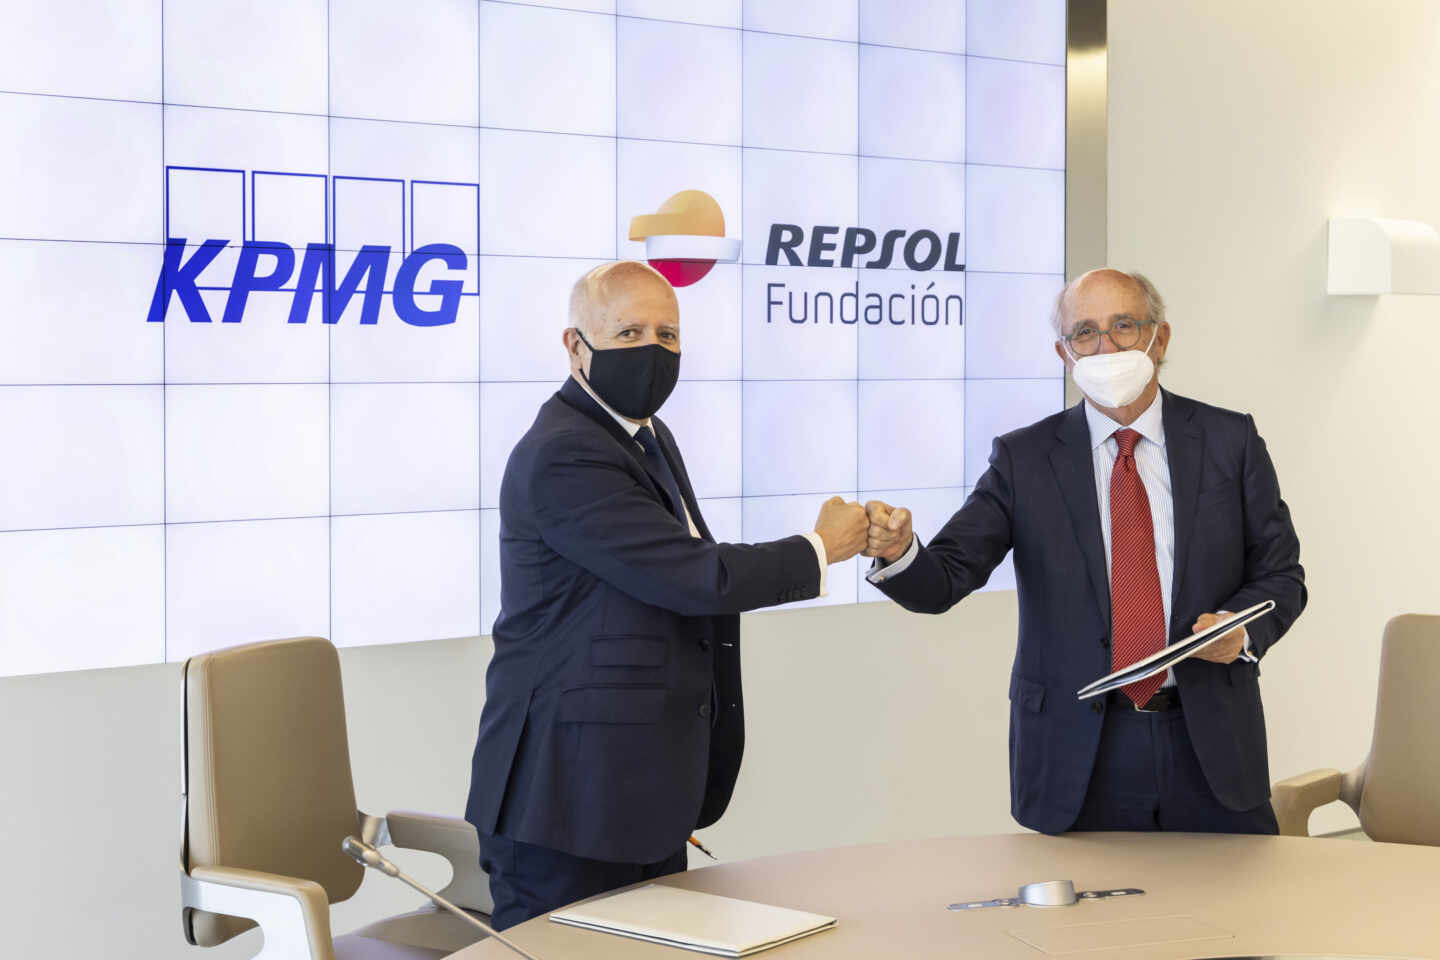 Hilario Albarracín, presidente de KPMG en España y Antonio Brufau, presidente de Fundación Repsol, durante el acto de firma del acuerdo entre ambas entidades.